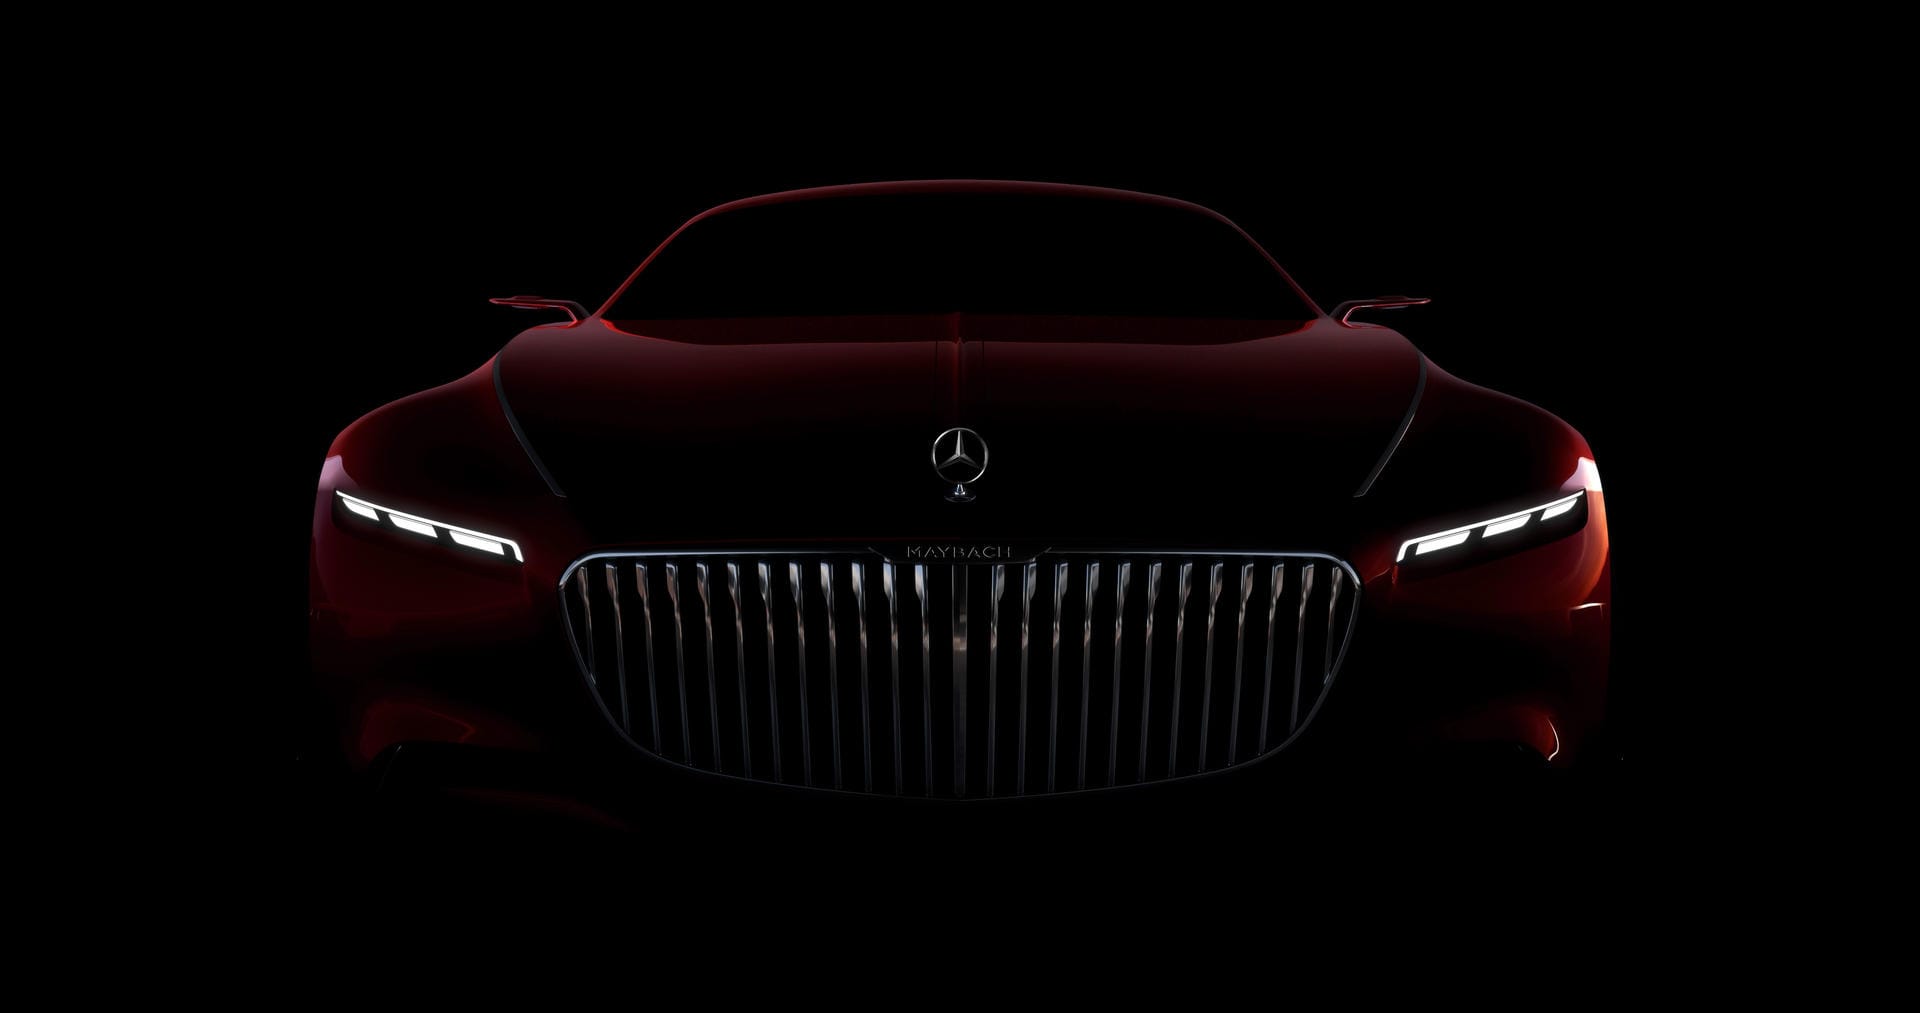 Vor der Premiere hatte Mercedes das Conceptcar in Häppchen präsentiert. Bereits der mächtige Kühler sorgte für Diskussion.